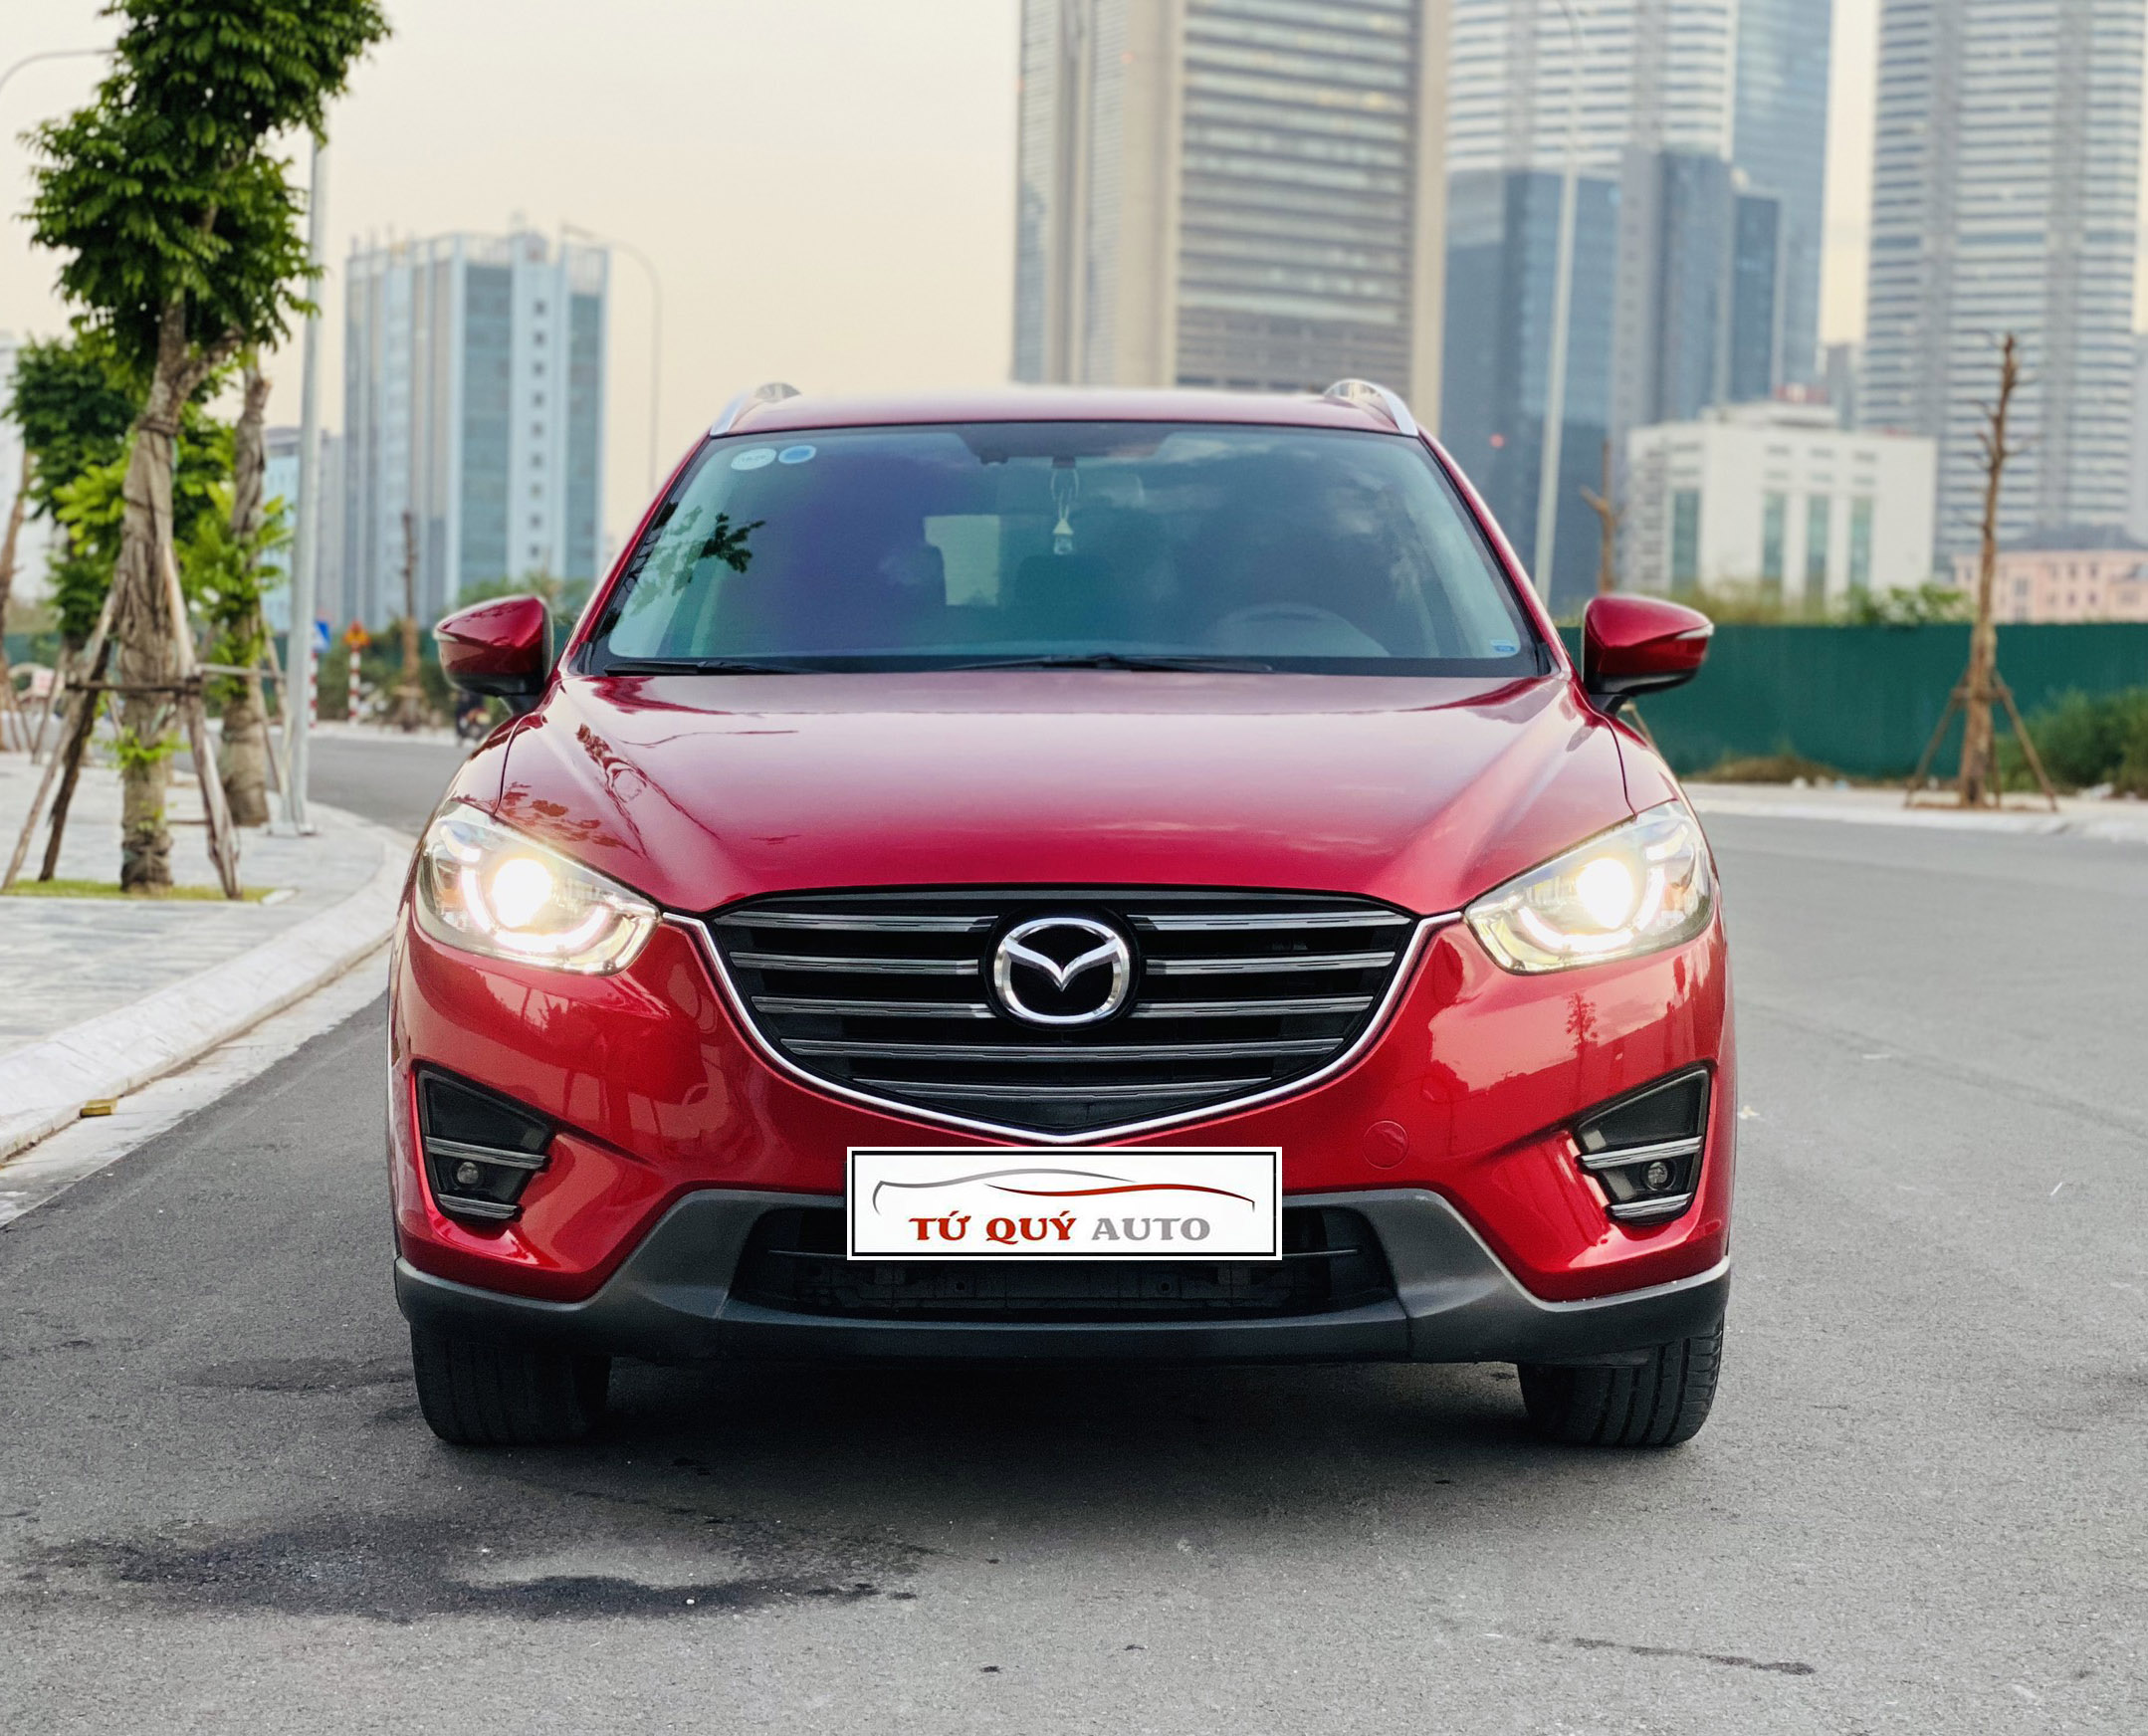 Mua bán xe Mazda CX 5 2018 cũ chính chủ giá tốt chỉ từ 749 triệu đồng